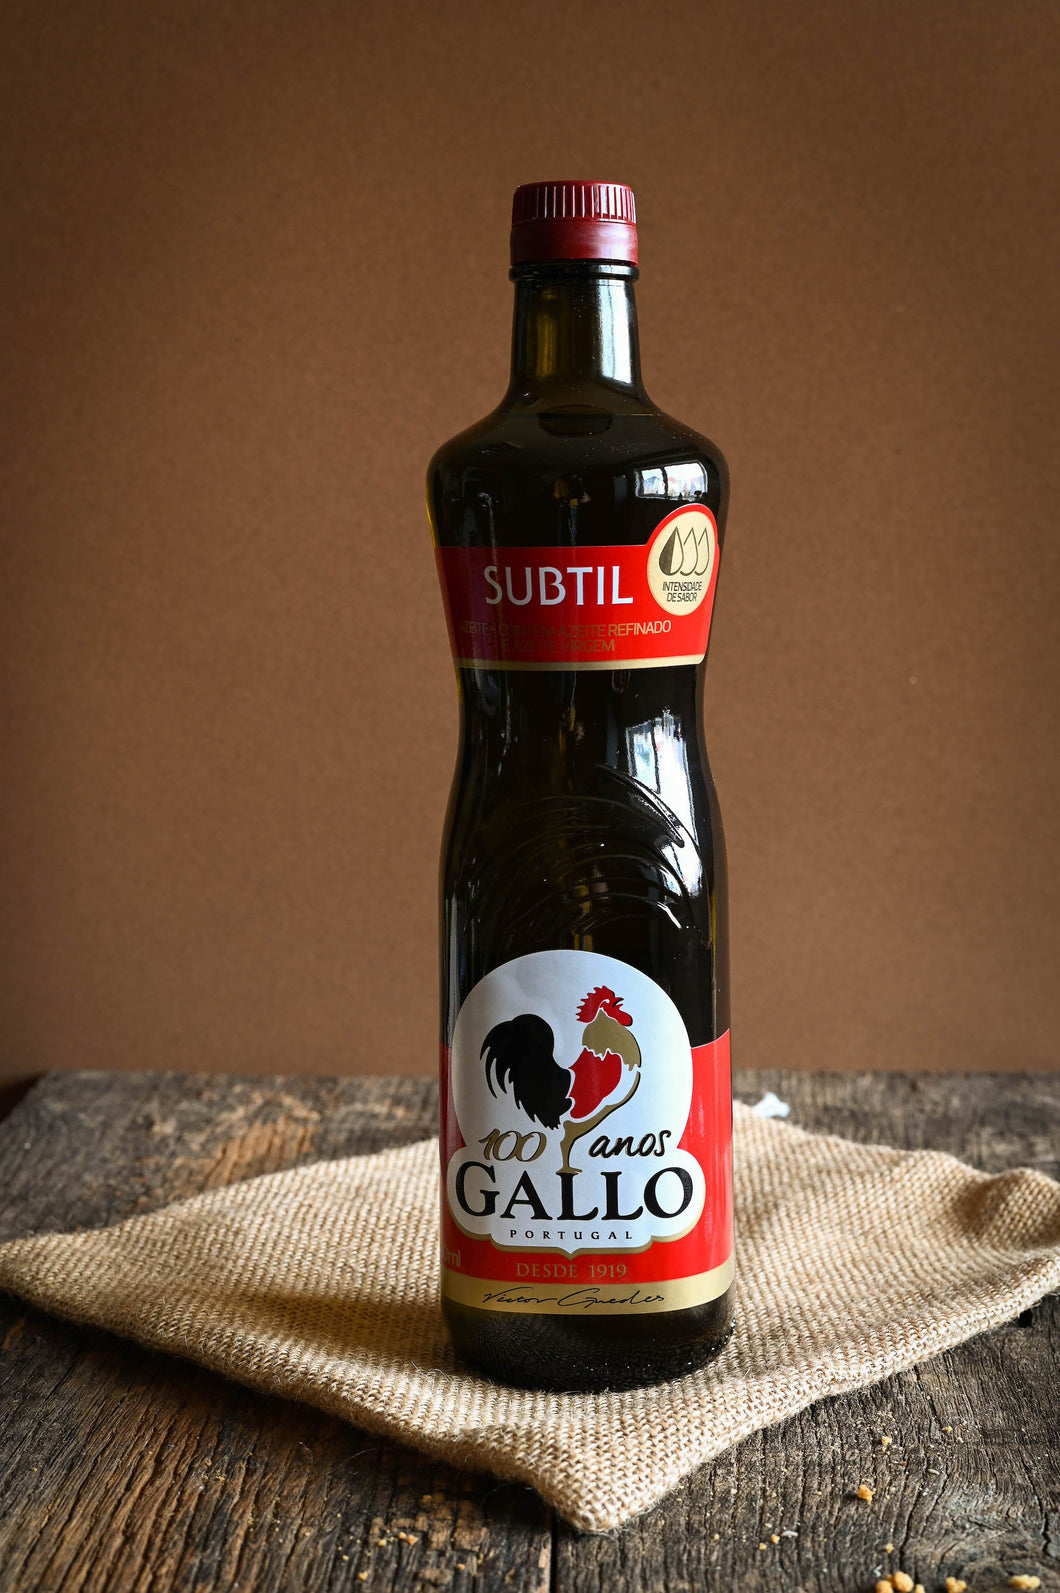 GALLO - Huile d'olive extra vierge subtil (750ml) - Les produits du soleil